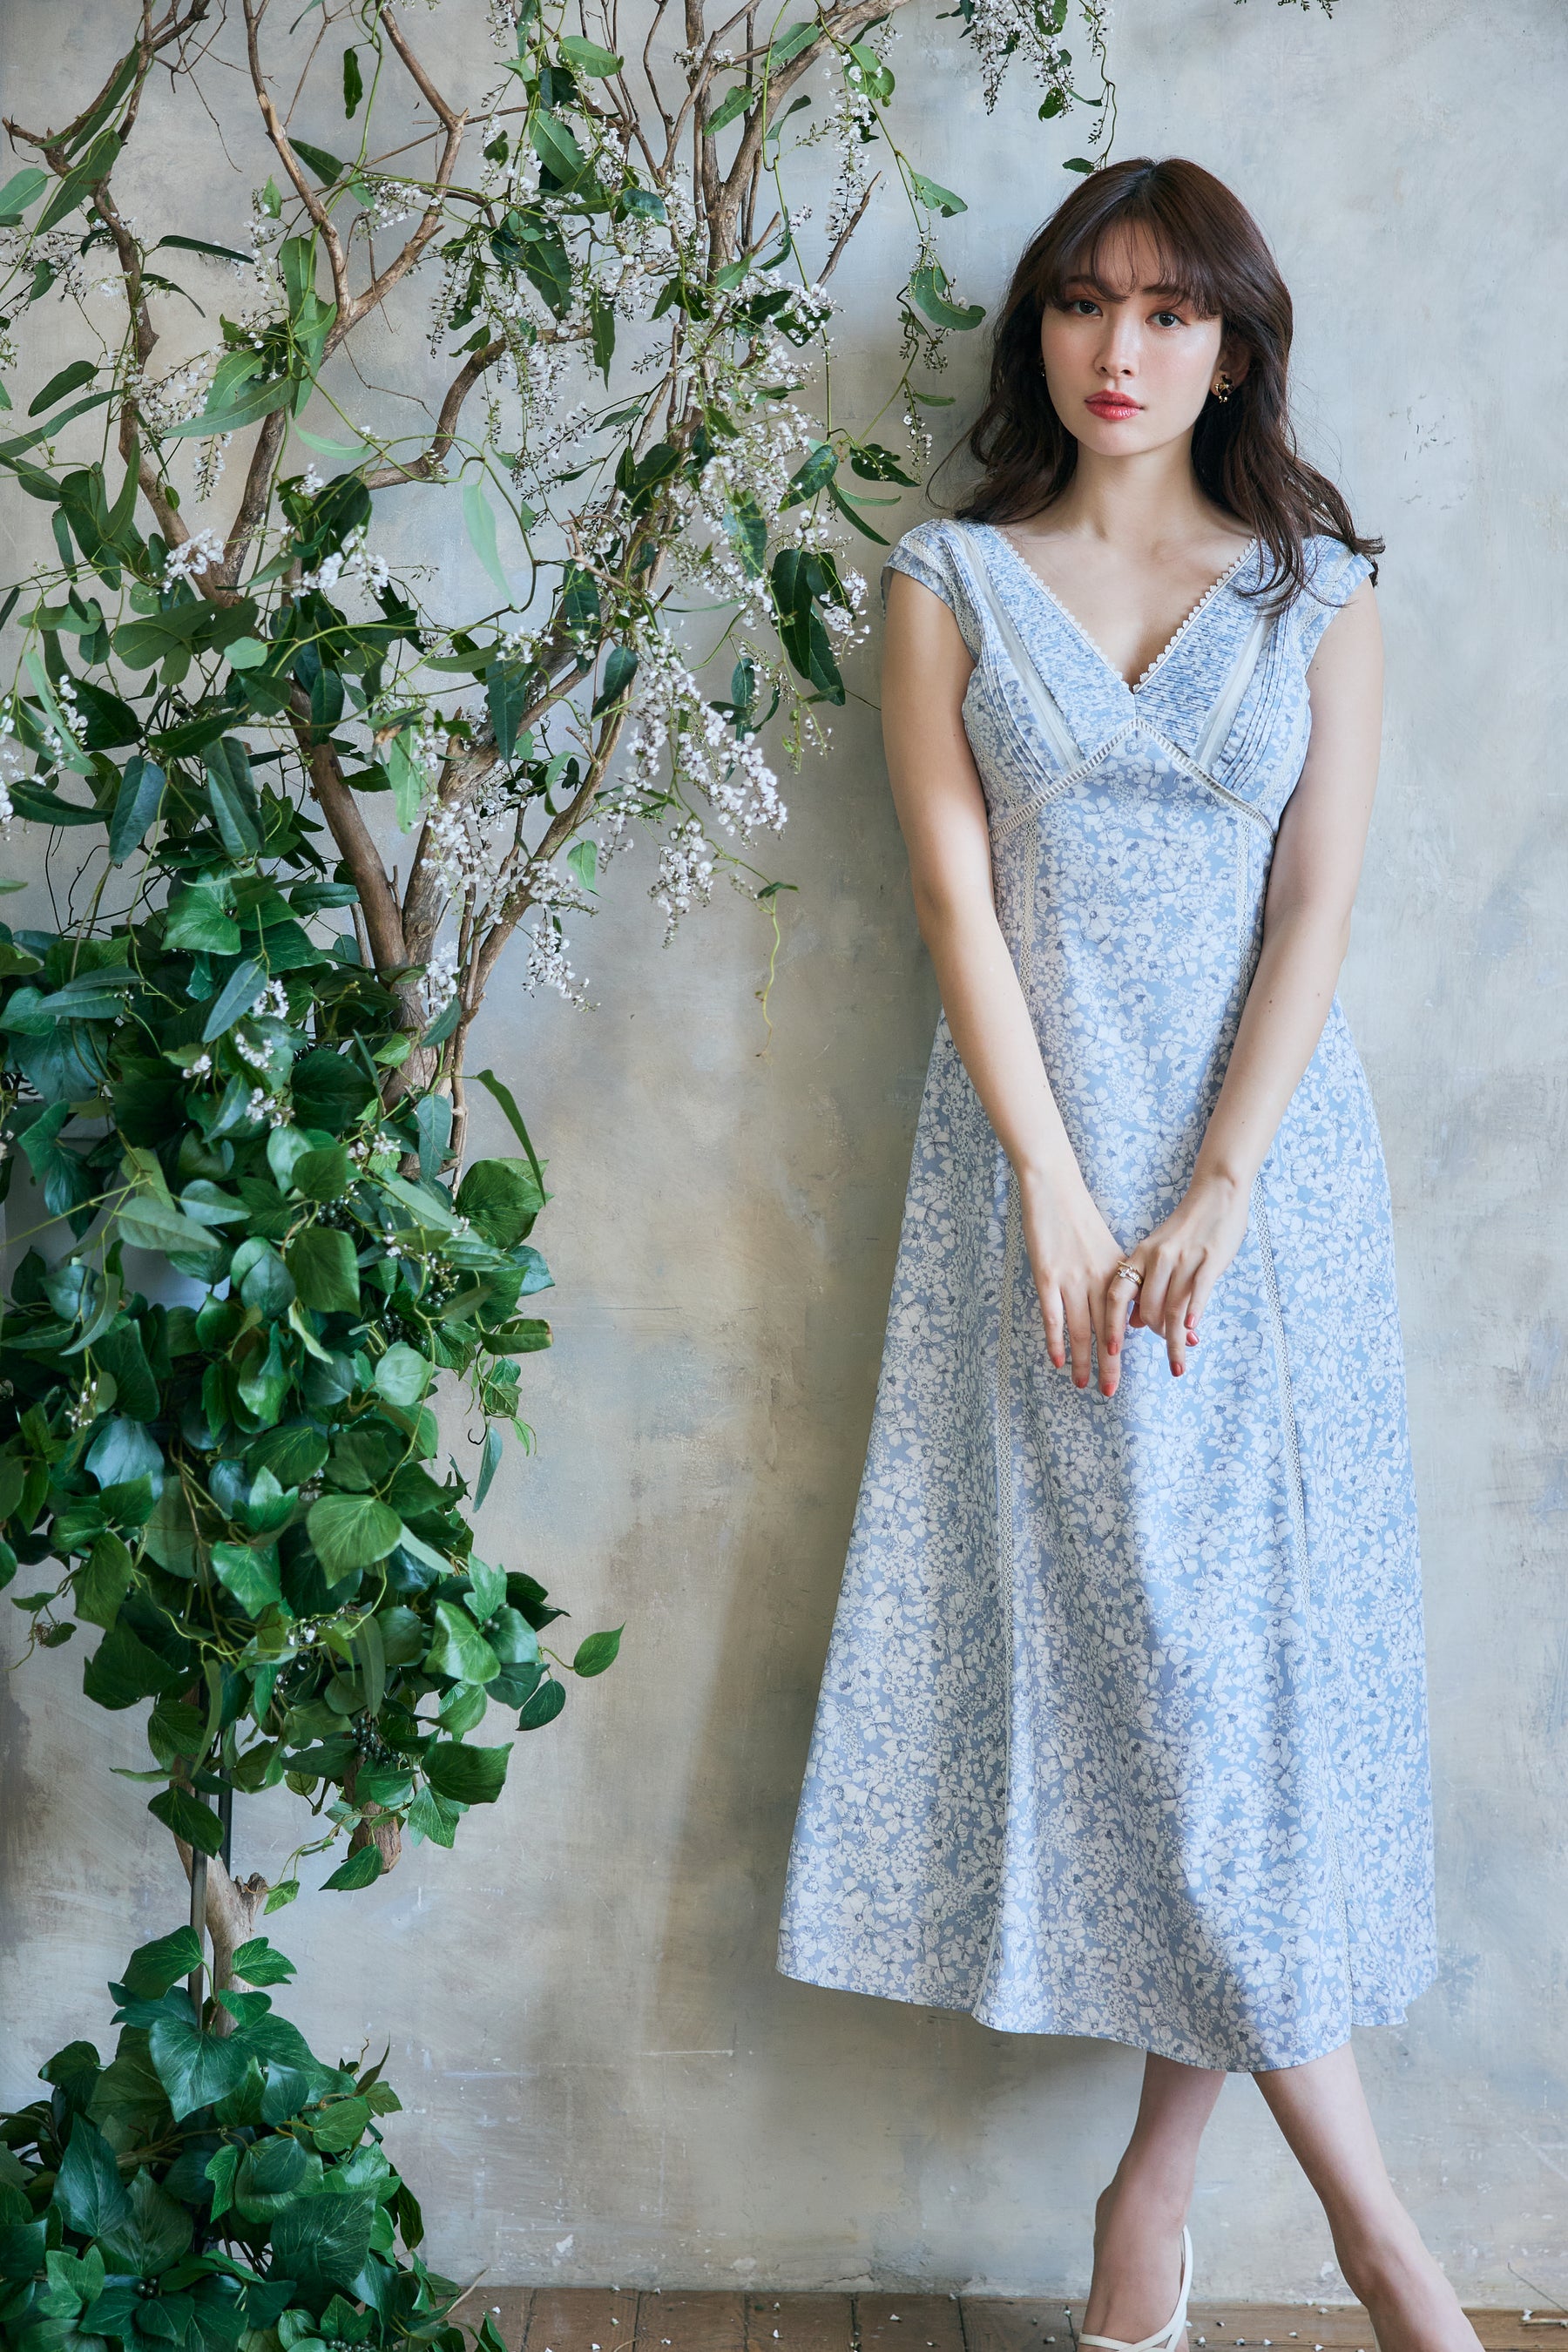 ロングワンピース/マキシワンピースherlipto Lace Trimmed Floral Dress フローラル